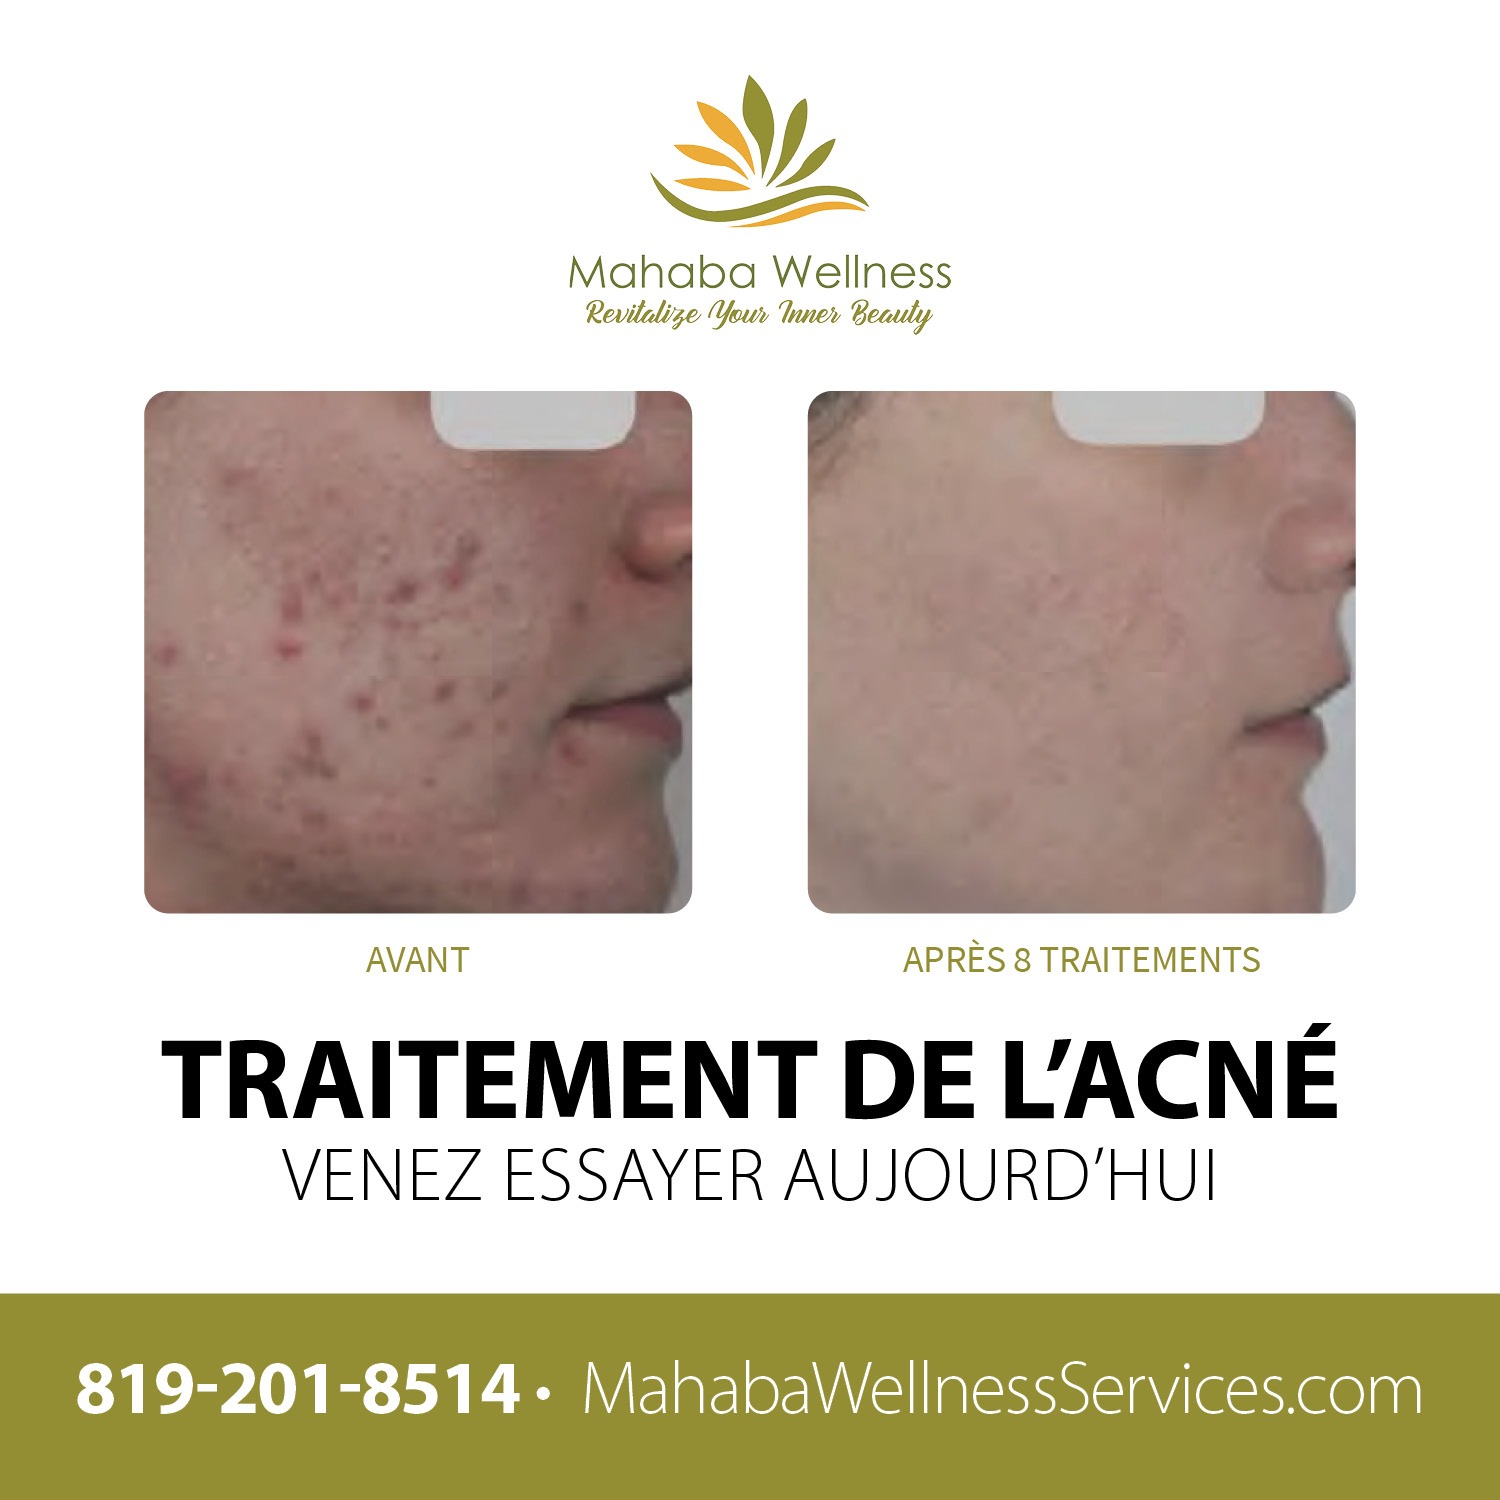 Mahaba Wellness Services - Traitement de l'acné - Avant après